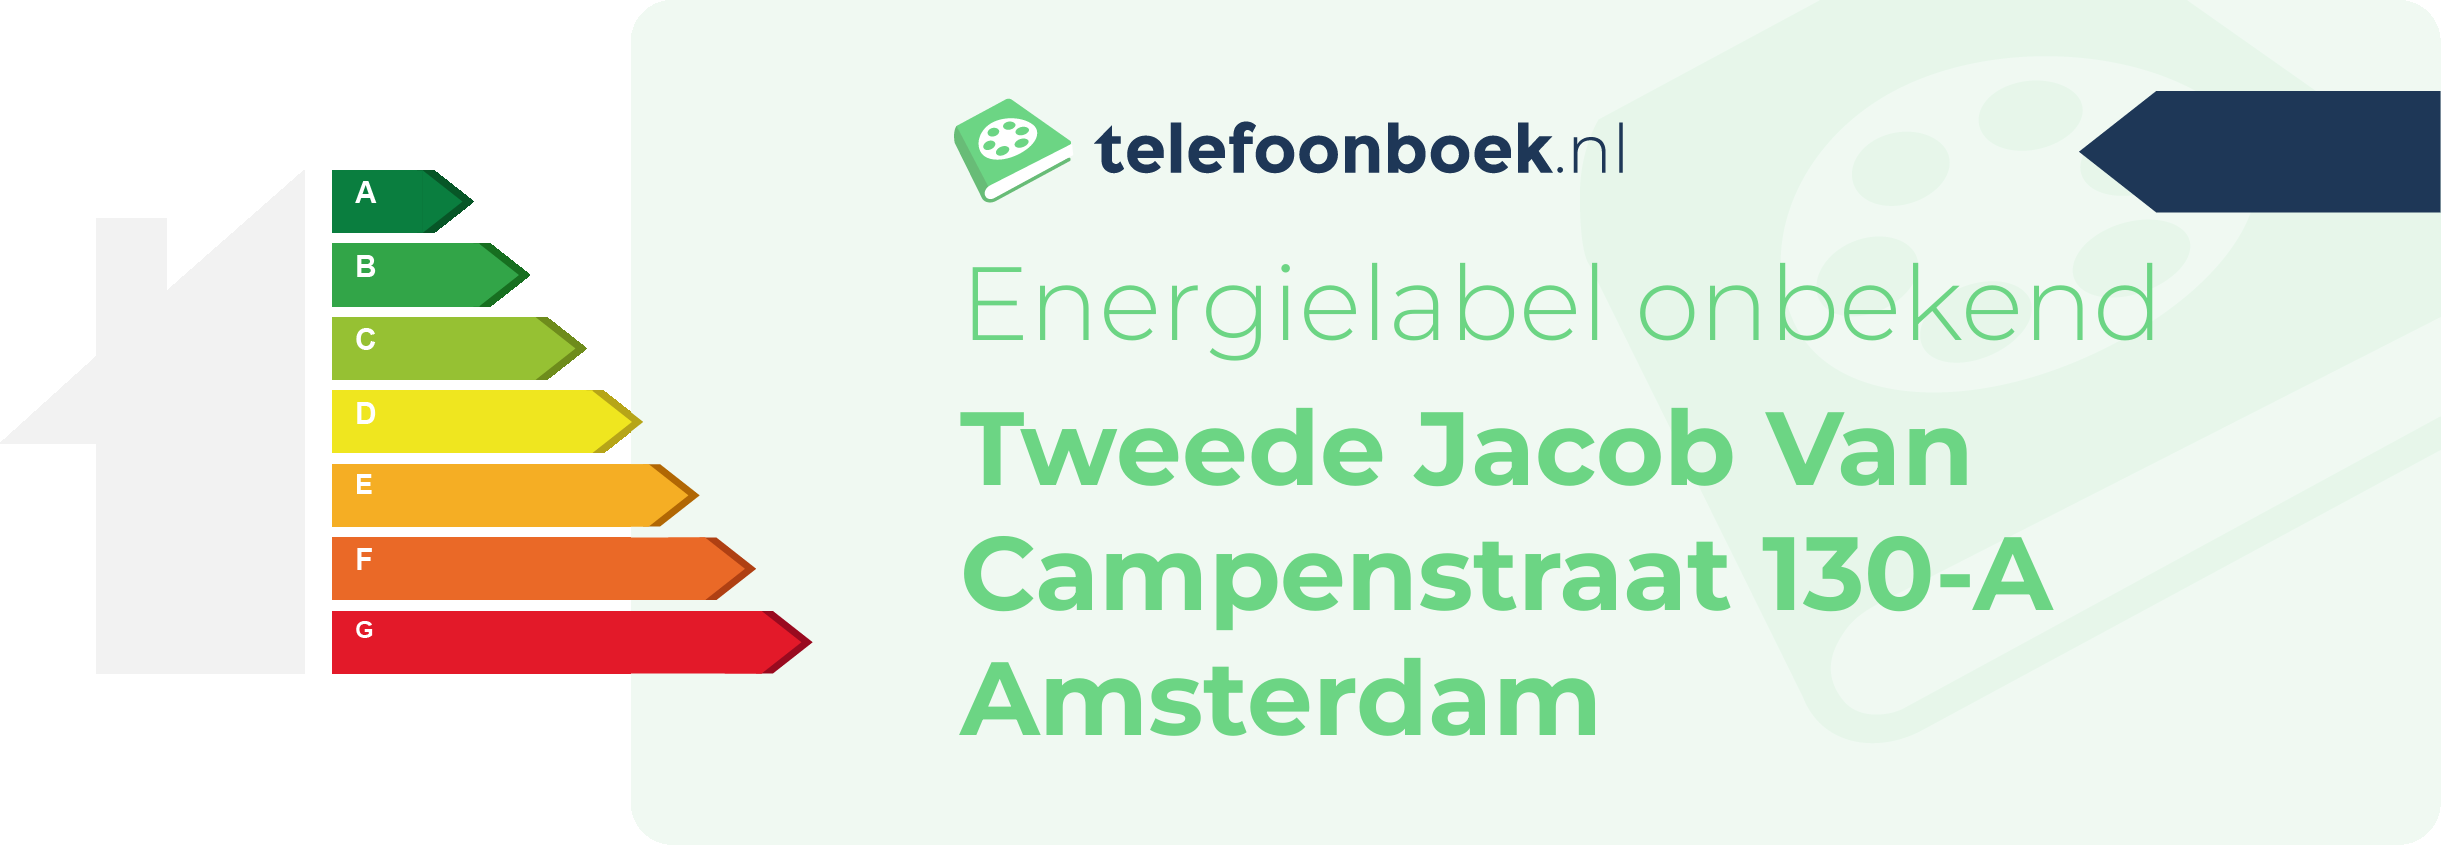 Energielabel Tweede Jacob Van Campenstraat 130-A Amsterdam